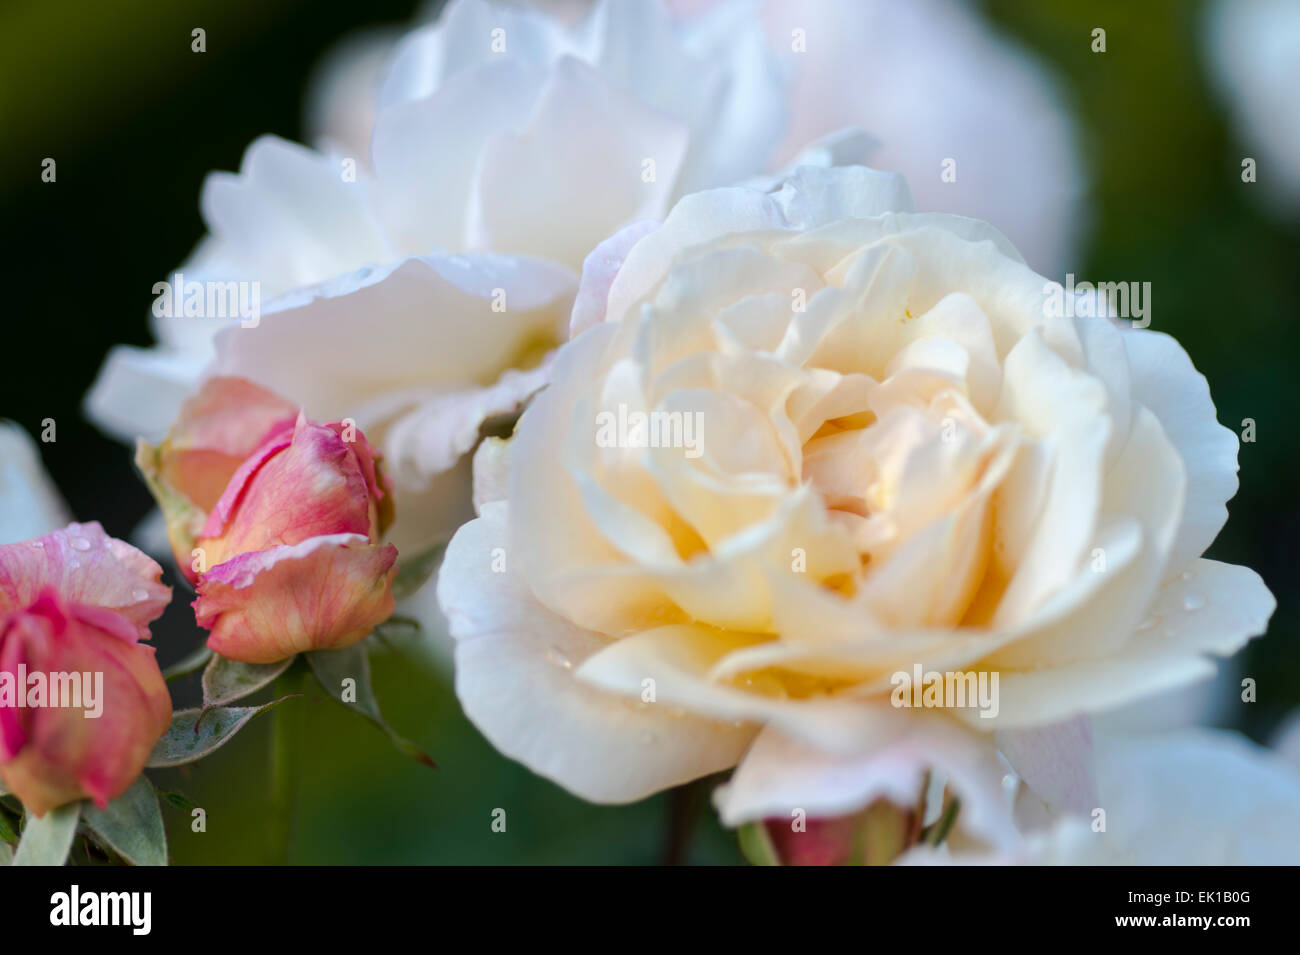 Rosa, Gruss an Aachen, white rose Stock Photo